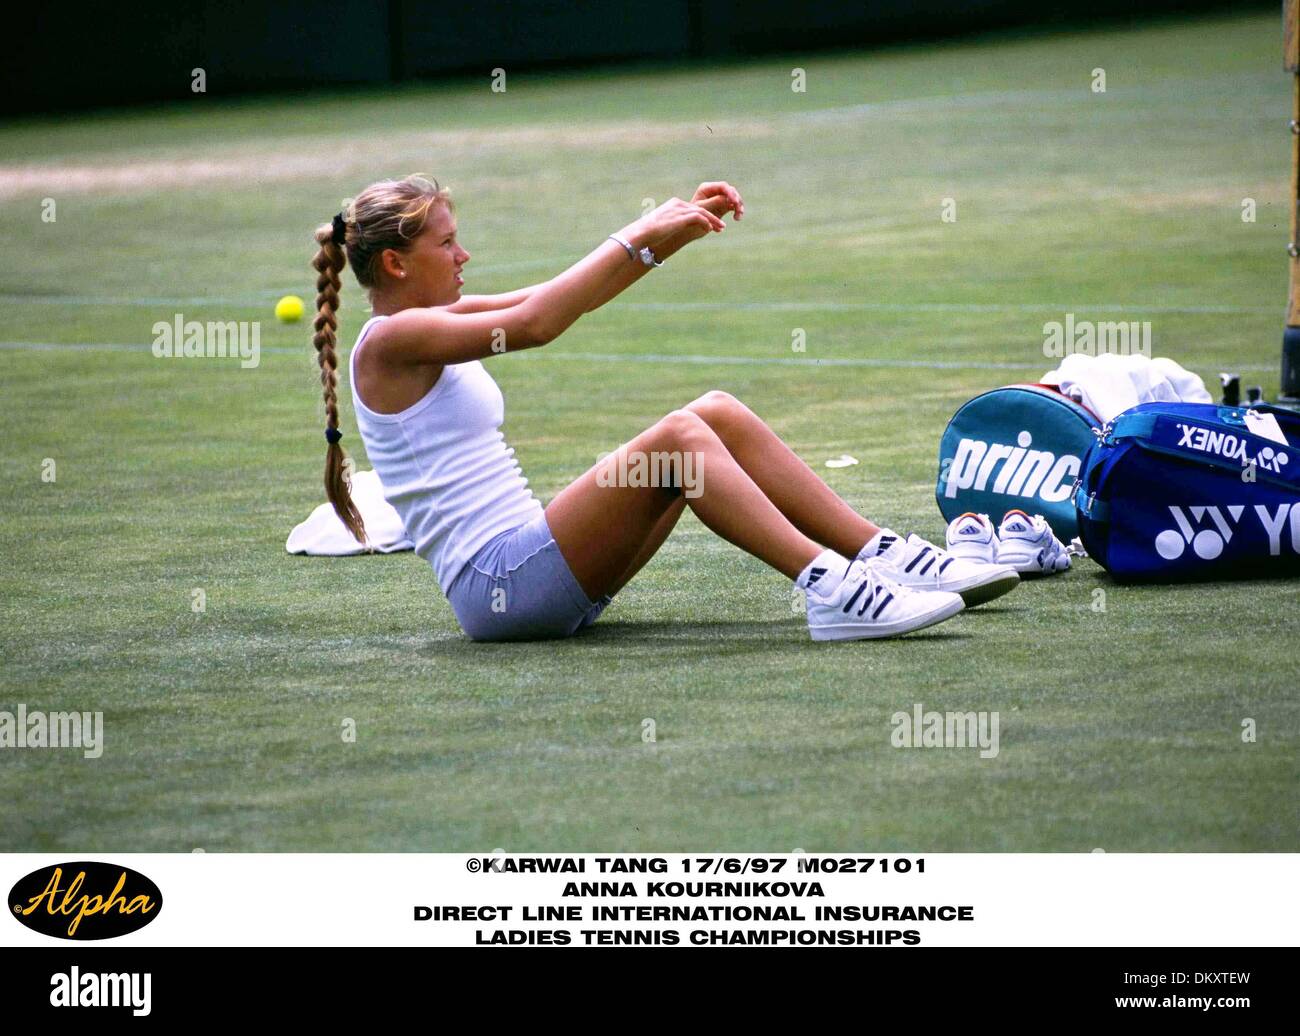 17. Juni 1997 besucht - London, ENGLAND - 17.06.97 ANNA KOURNIKOVA '' die direkte Linie internationale Versicherung Damen TENNIS CHAMPIONSHIPS ''. GLAMFITNESS (Kredit-Bild: © Globe Photos/ZUMAPRESS.com) Stockfoto